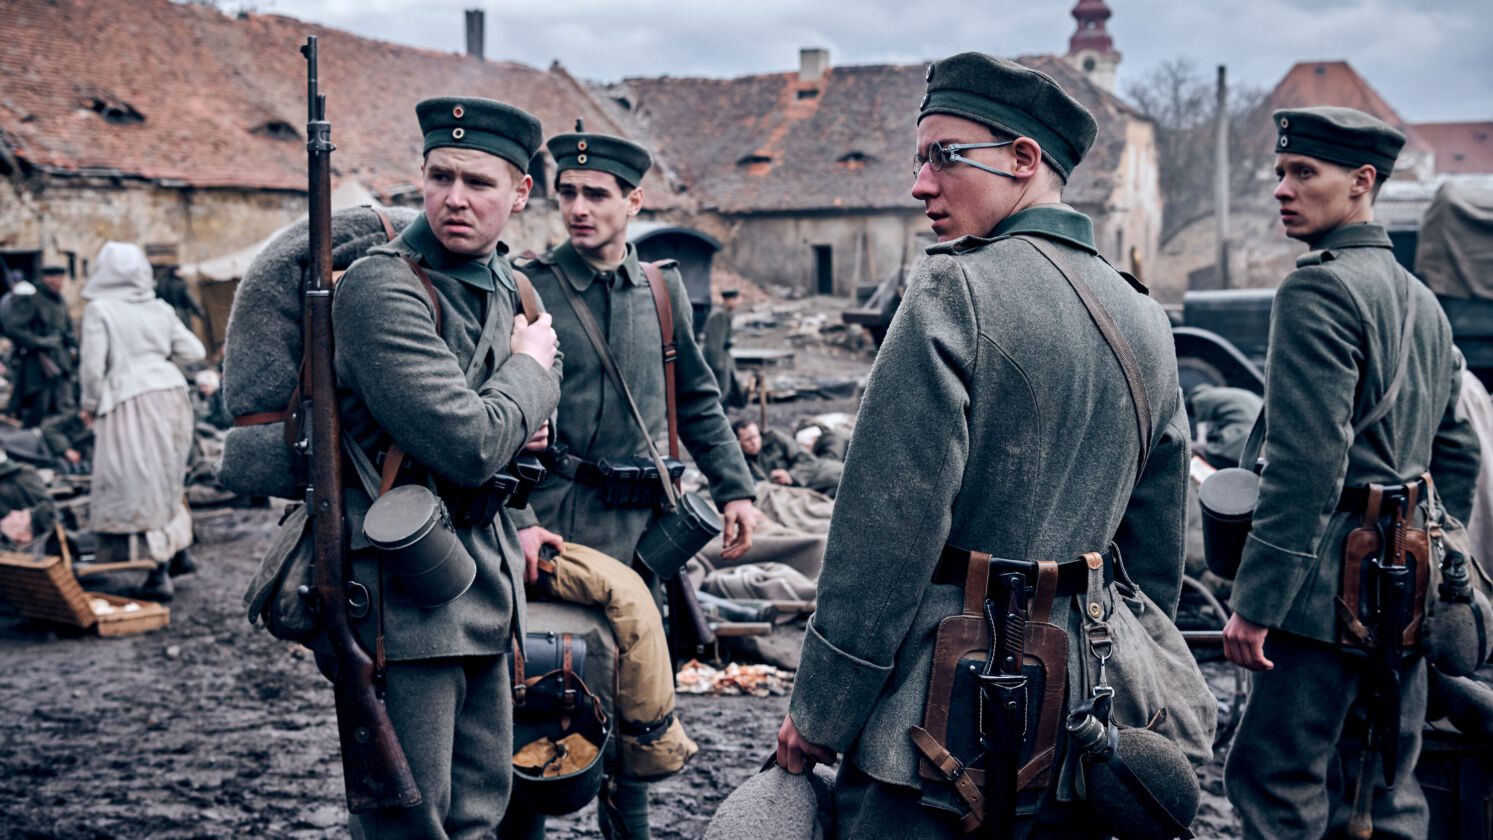 La recensione di Niente di nuovo sul fronte occidentale, film di guerra disponibile su Netflix dal 28 ottobre 2022